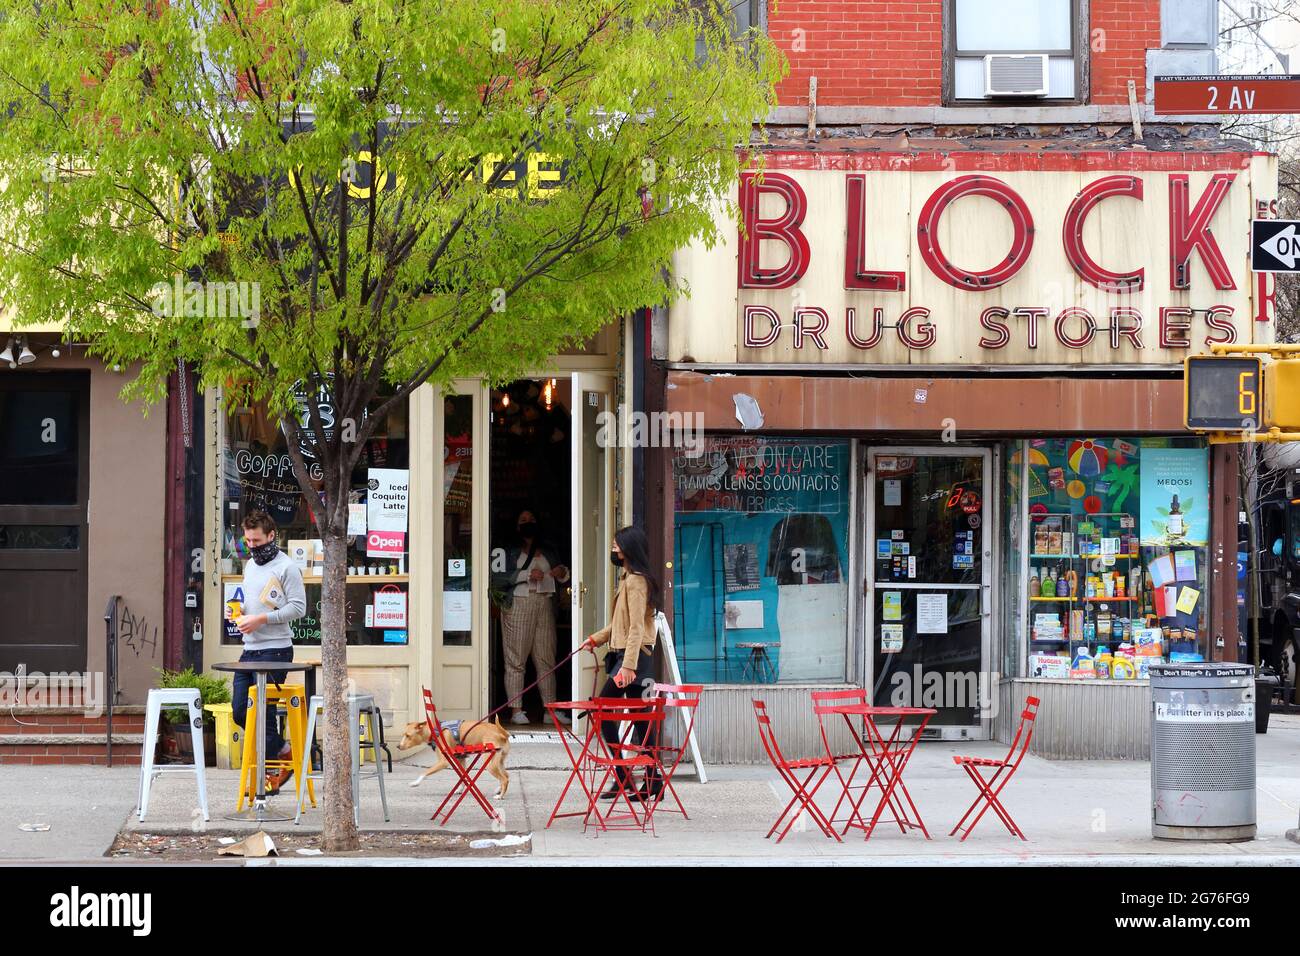 787 Coffee, Block Drug Store, 101 2nd Ave, New York, foto del negozio di New York di una caffetteria da fattoria a tazza e di una drogheria nell'East Village. Foto Stock